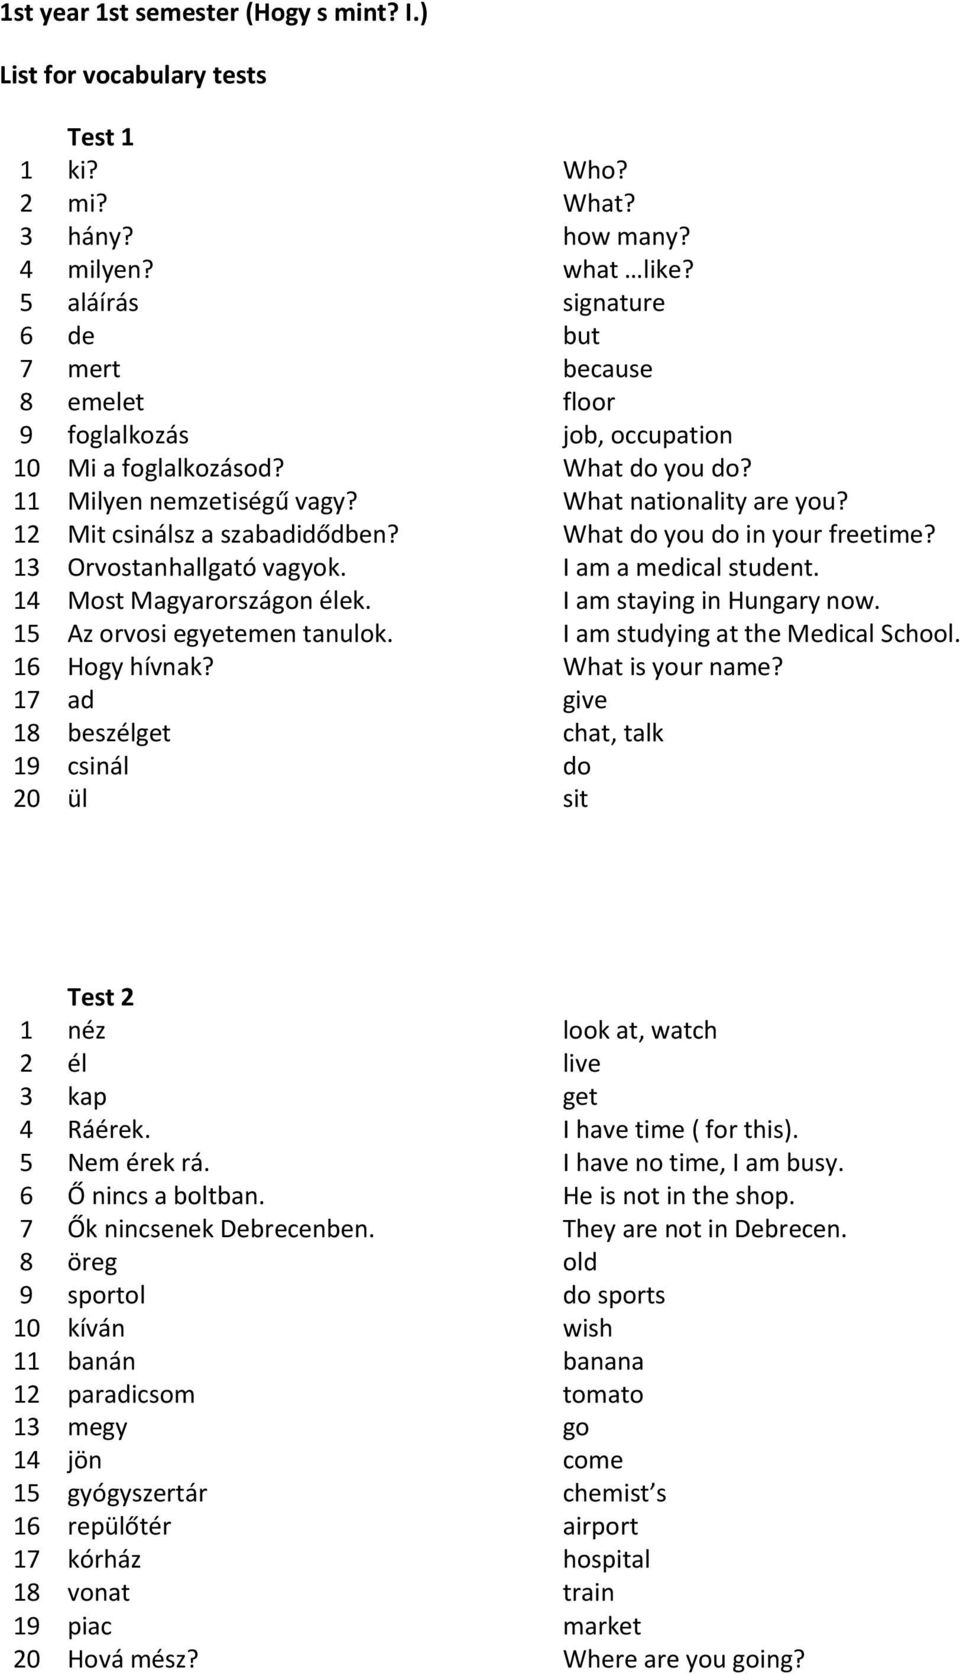 1st year 1st semester (Hogy s mint? I.) List for vocabulary tests - PDF  Ingyenes letöltés